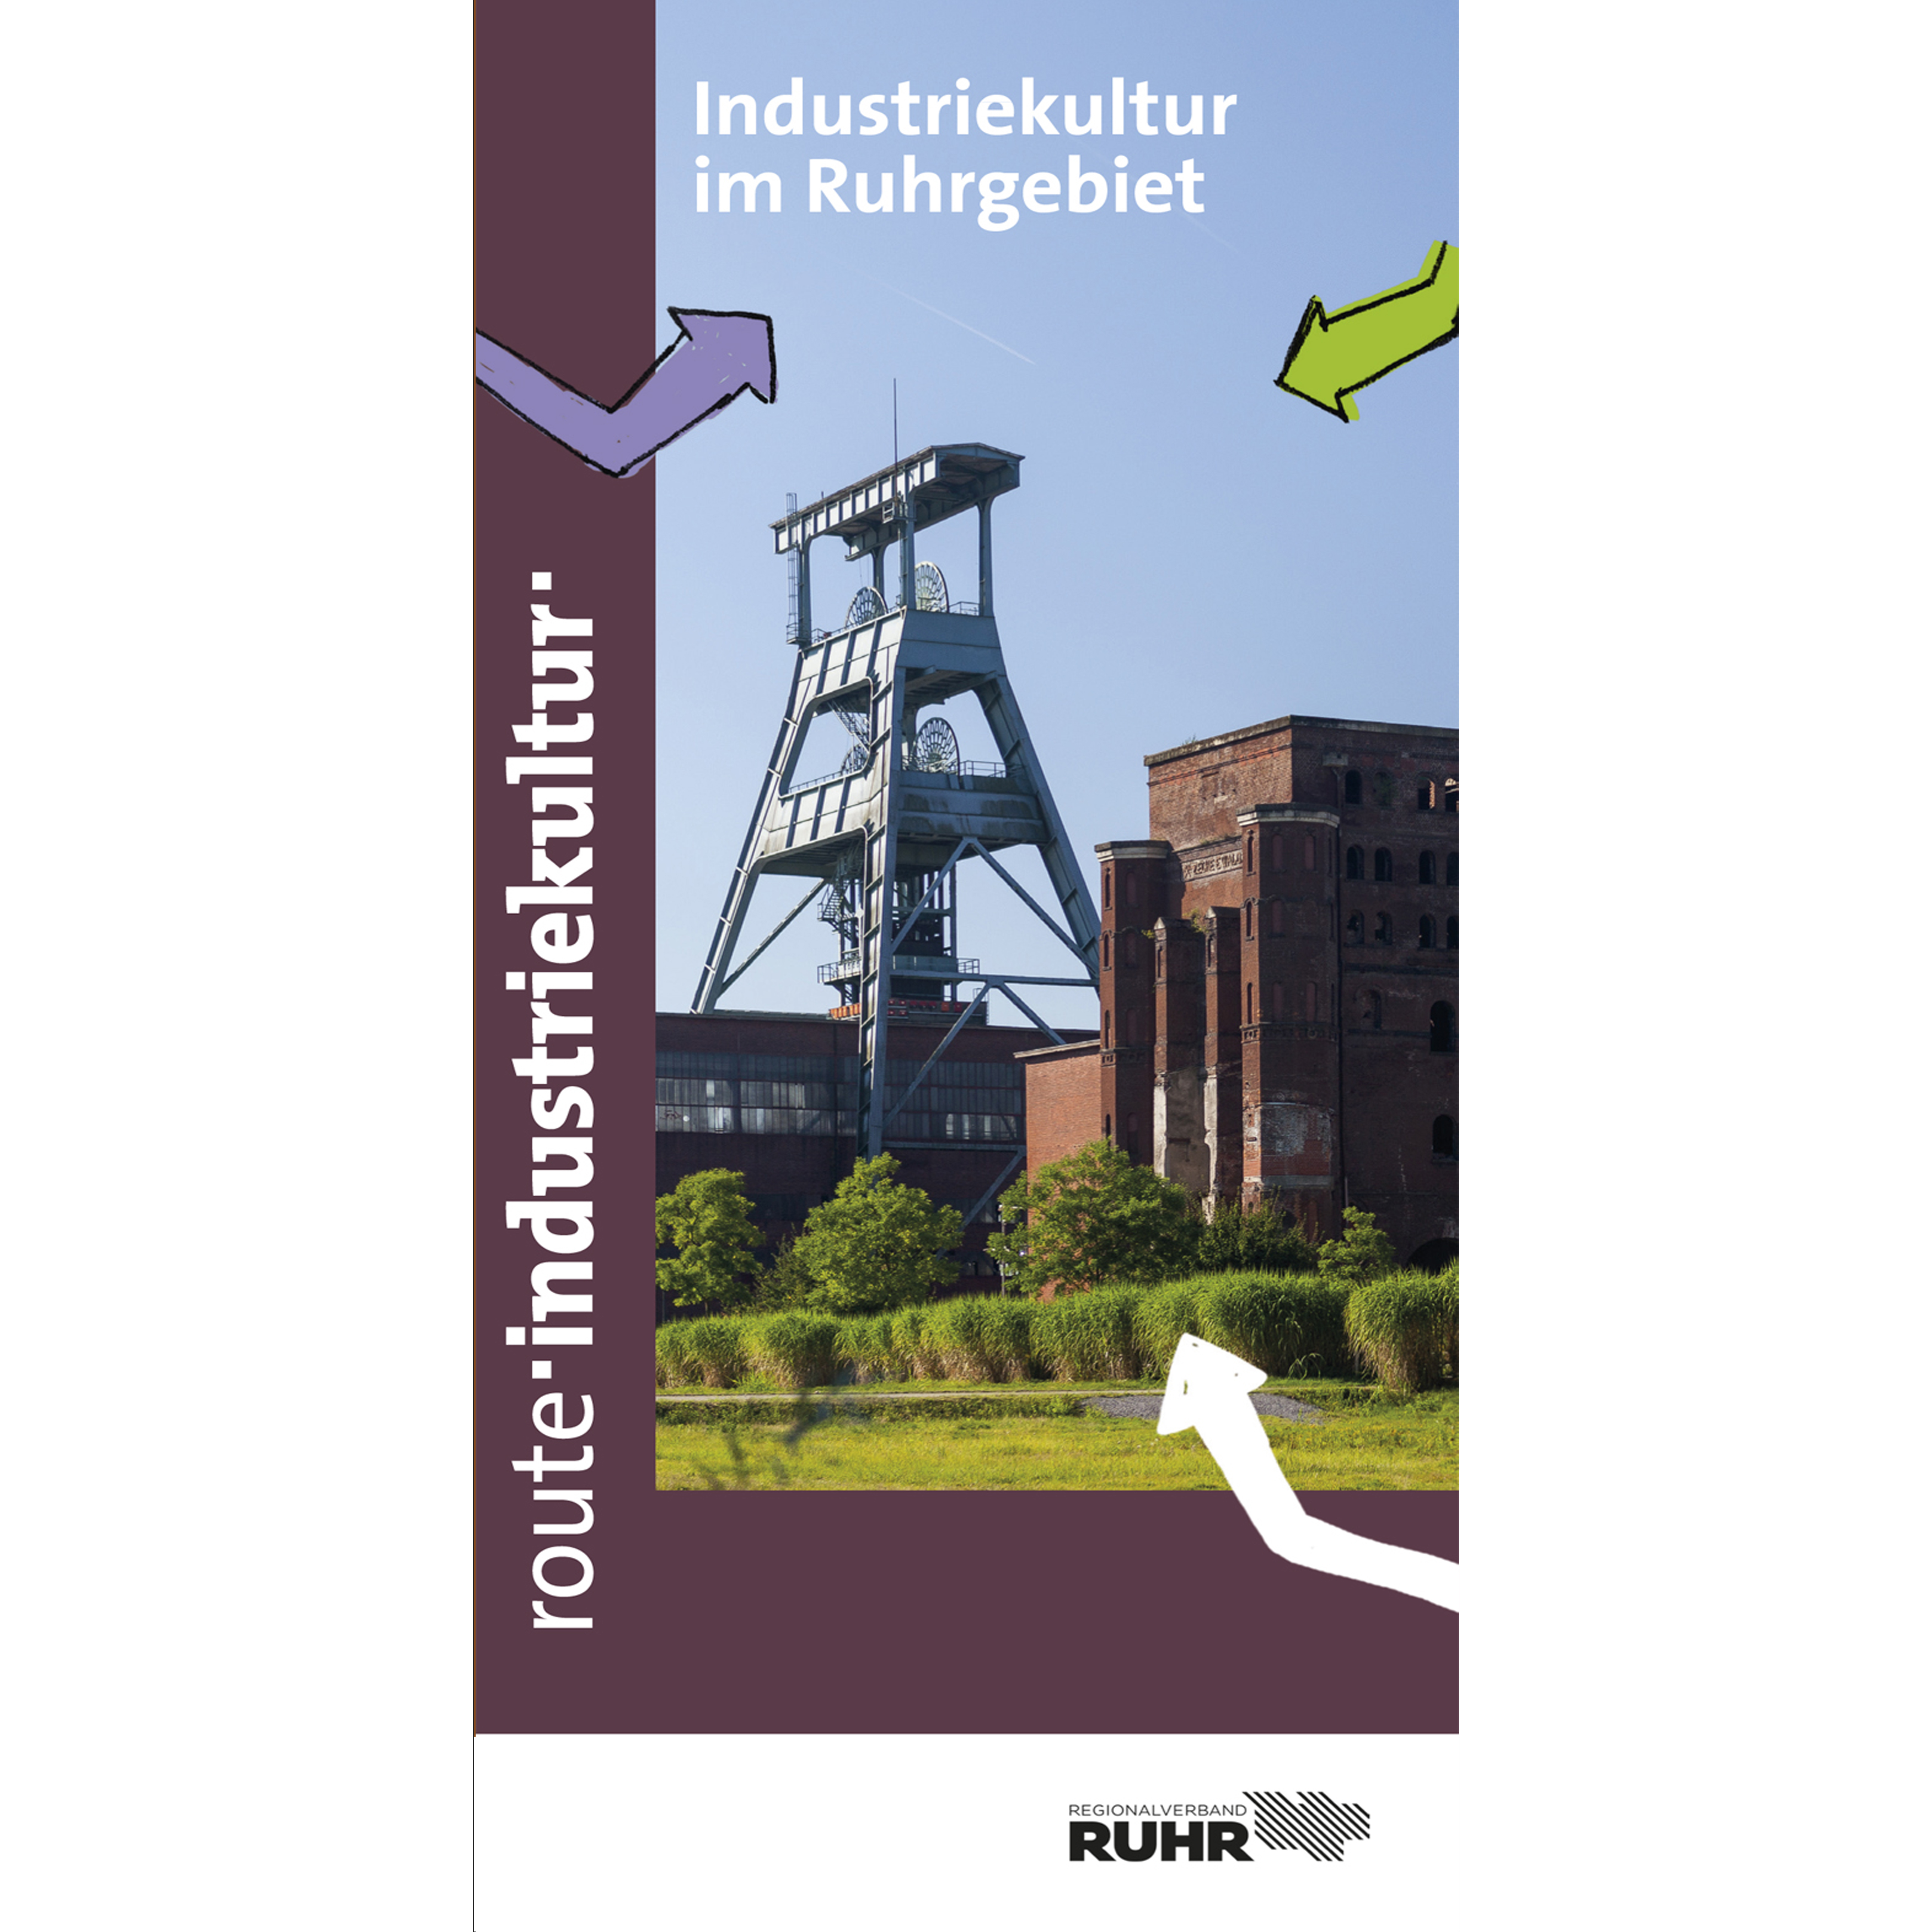 Der Flyer "Industriekultur im Ruhrgebiet" liefert einen ersten Einblick ins Thema Industriekultur.